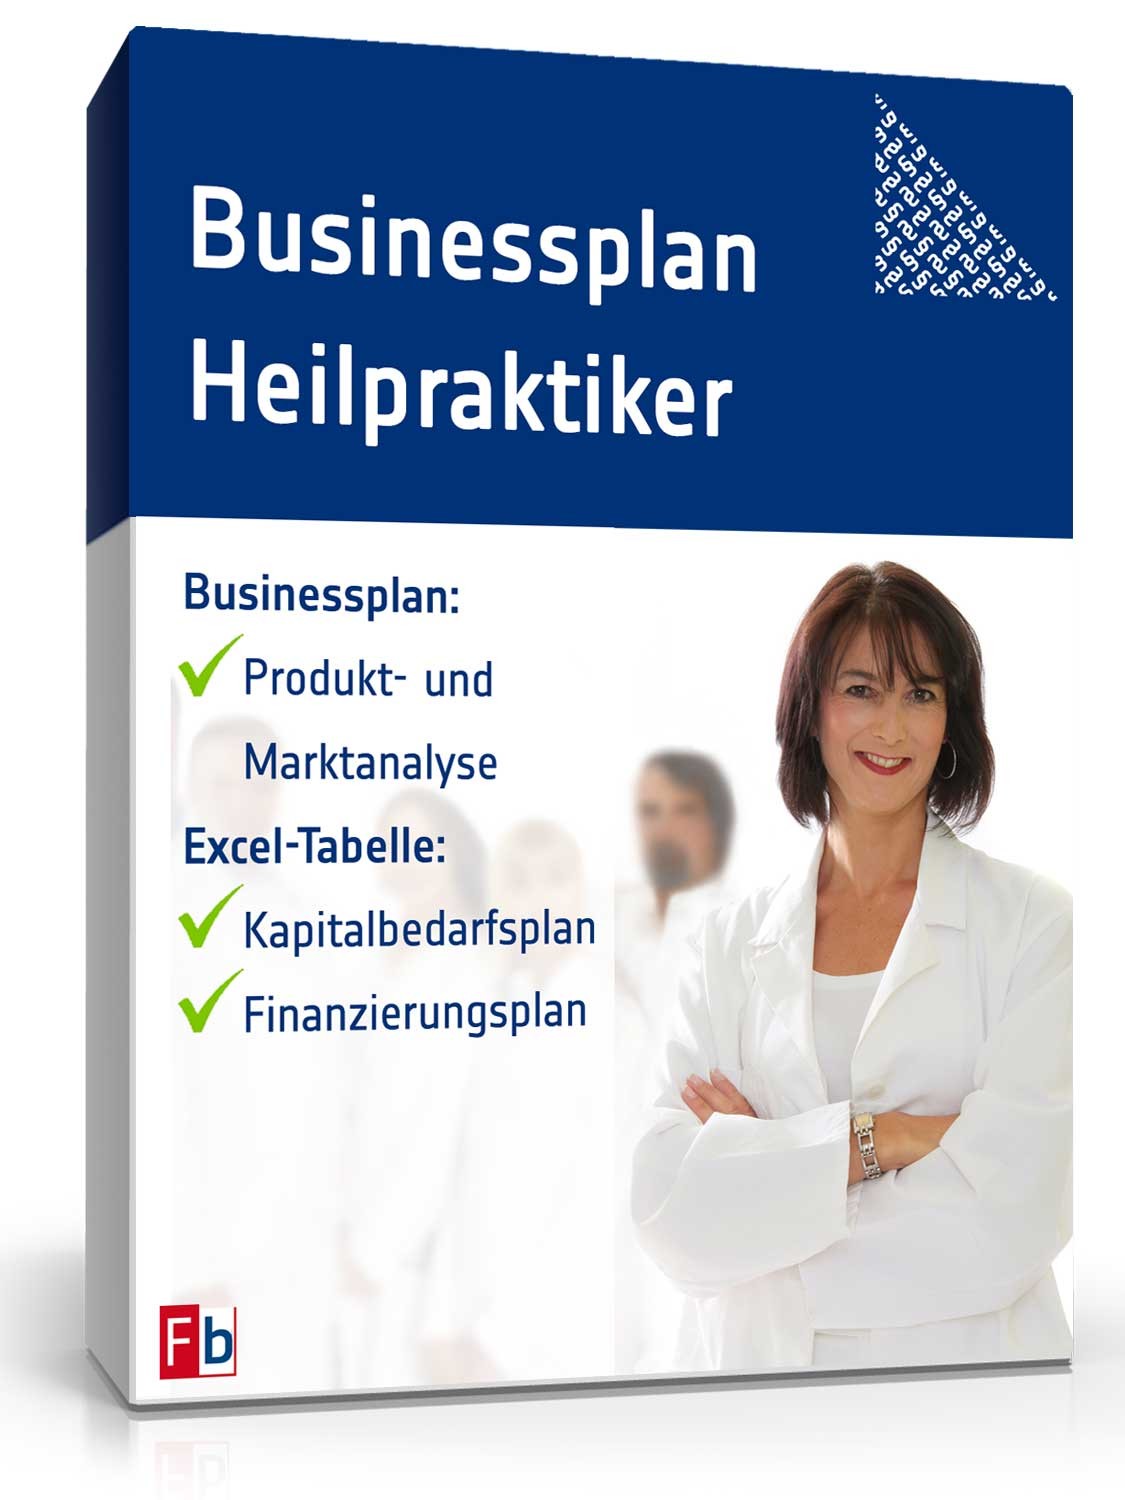 Hauptbild des Produkts: Businessplan Heilpraktiker